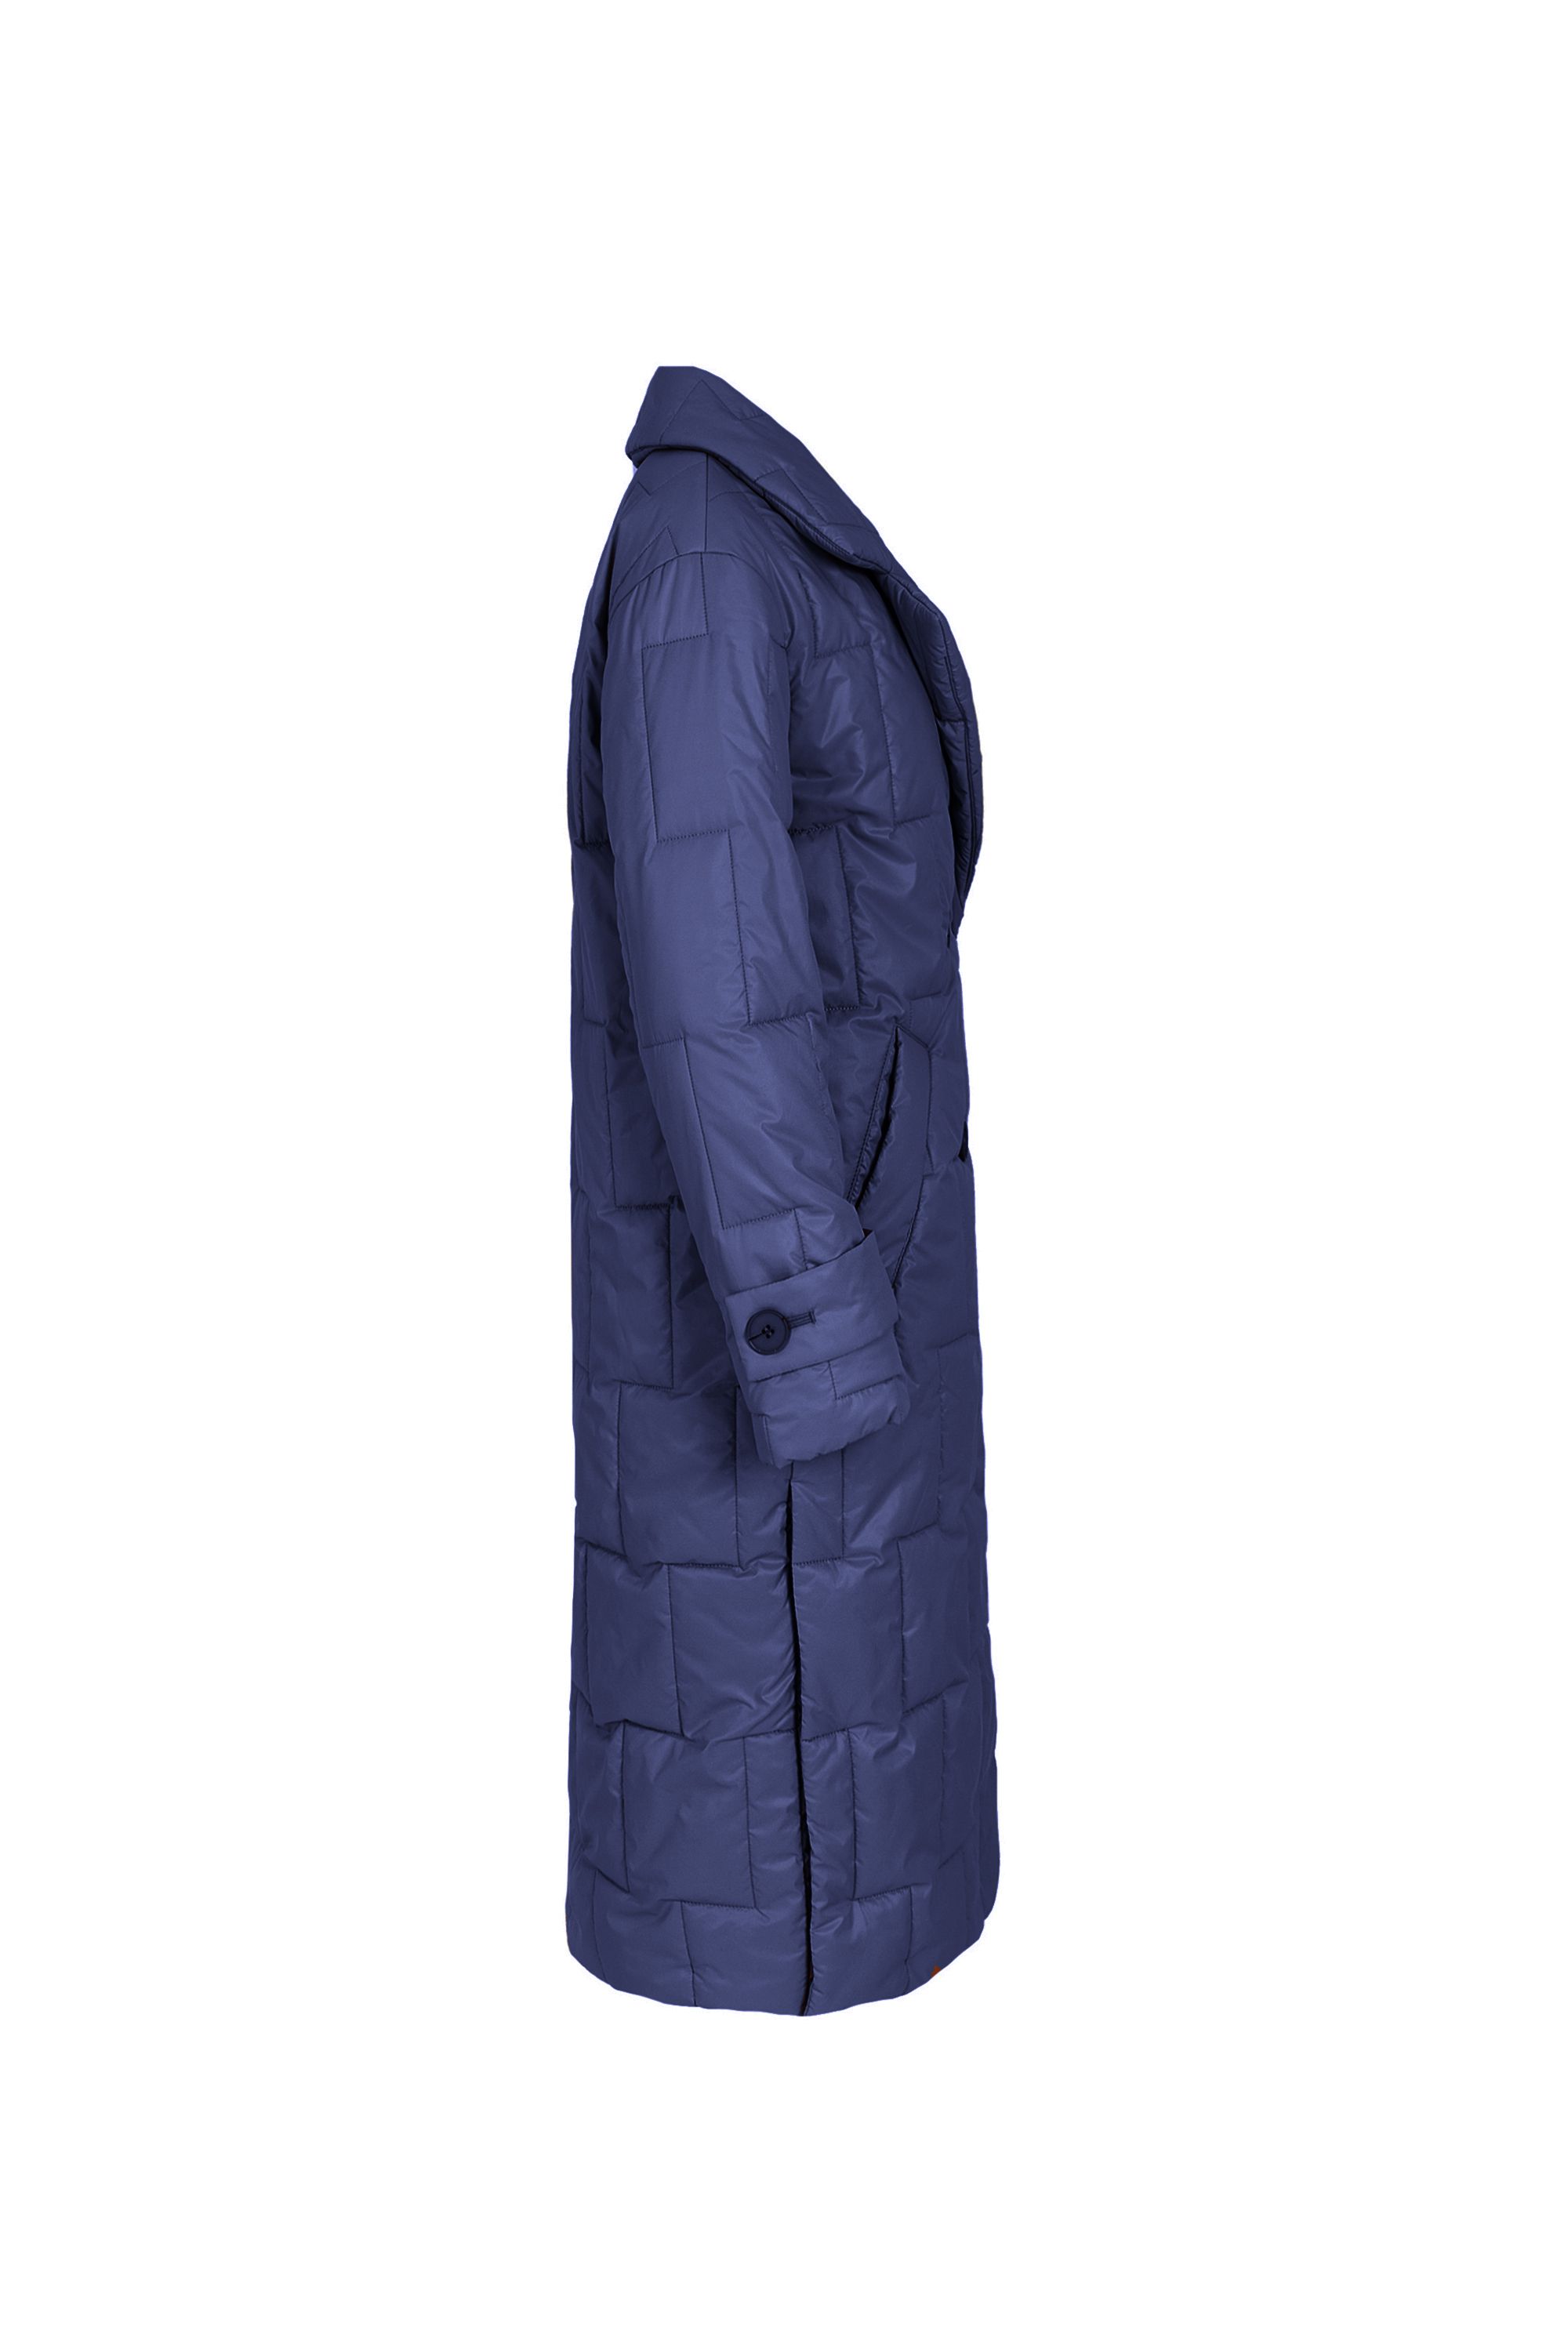 Пальто женское плащевое утепленное 5-12593-1. Фото 2.